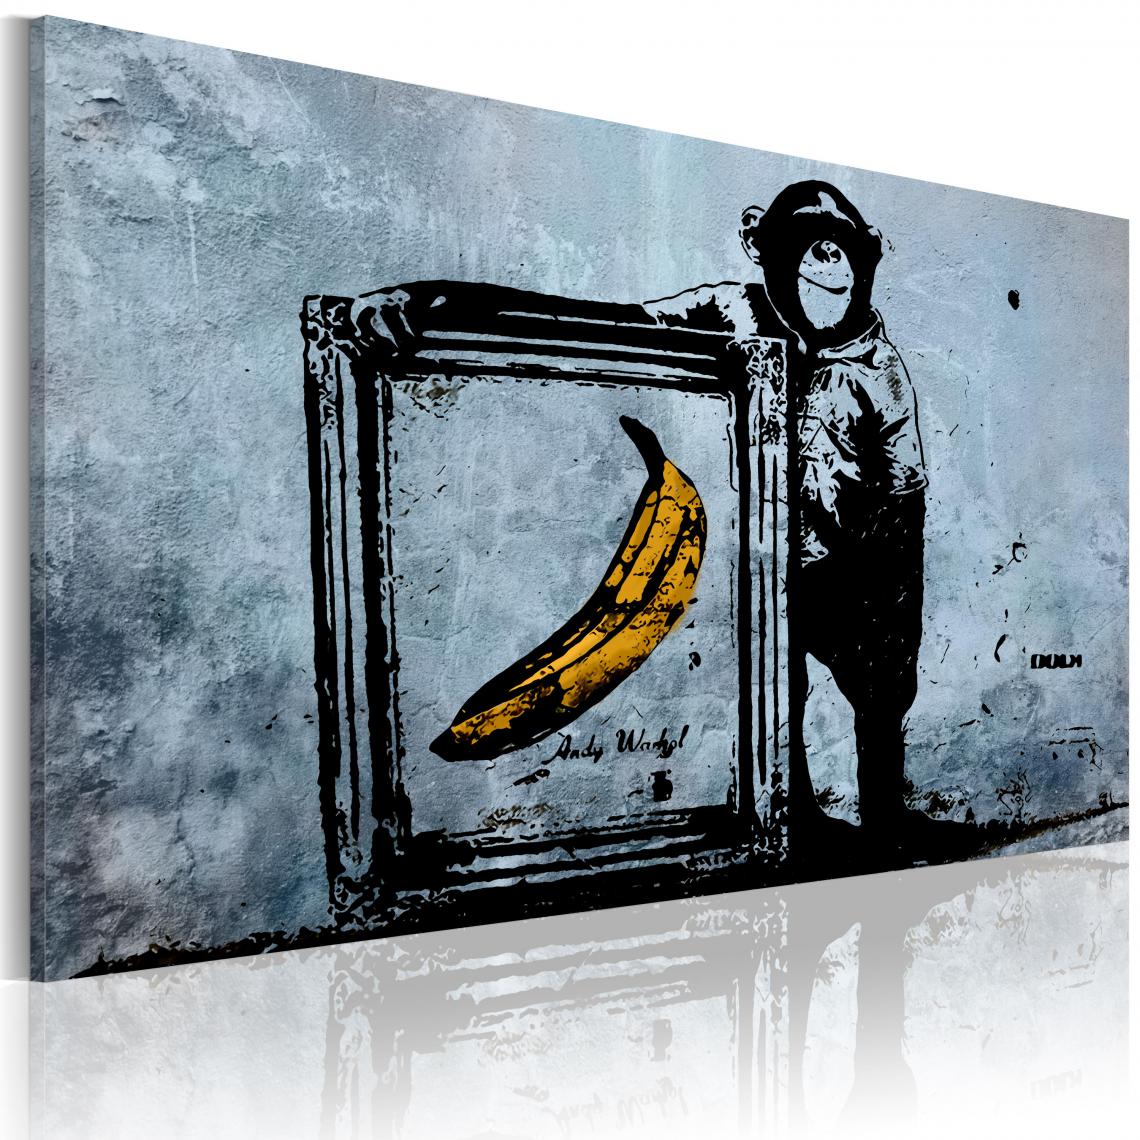 Decoshop26 - Tableau sur toile décoration murale image imprimée cadre en bois à suspendre Inspiré de Banksy 60x40 cm 11_0003344 - Tableaux, peintures